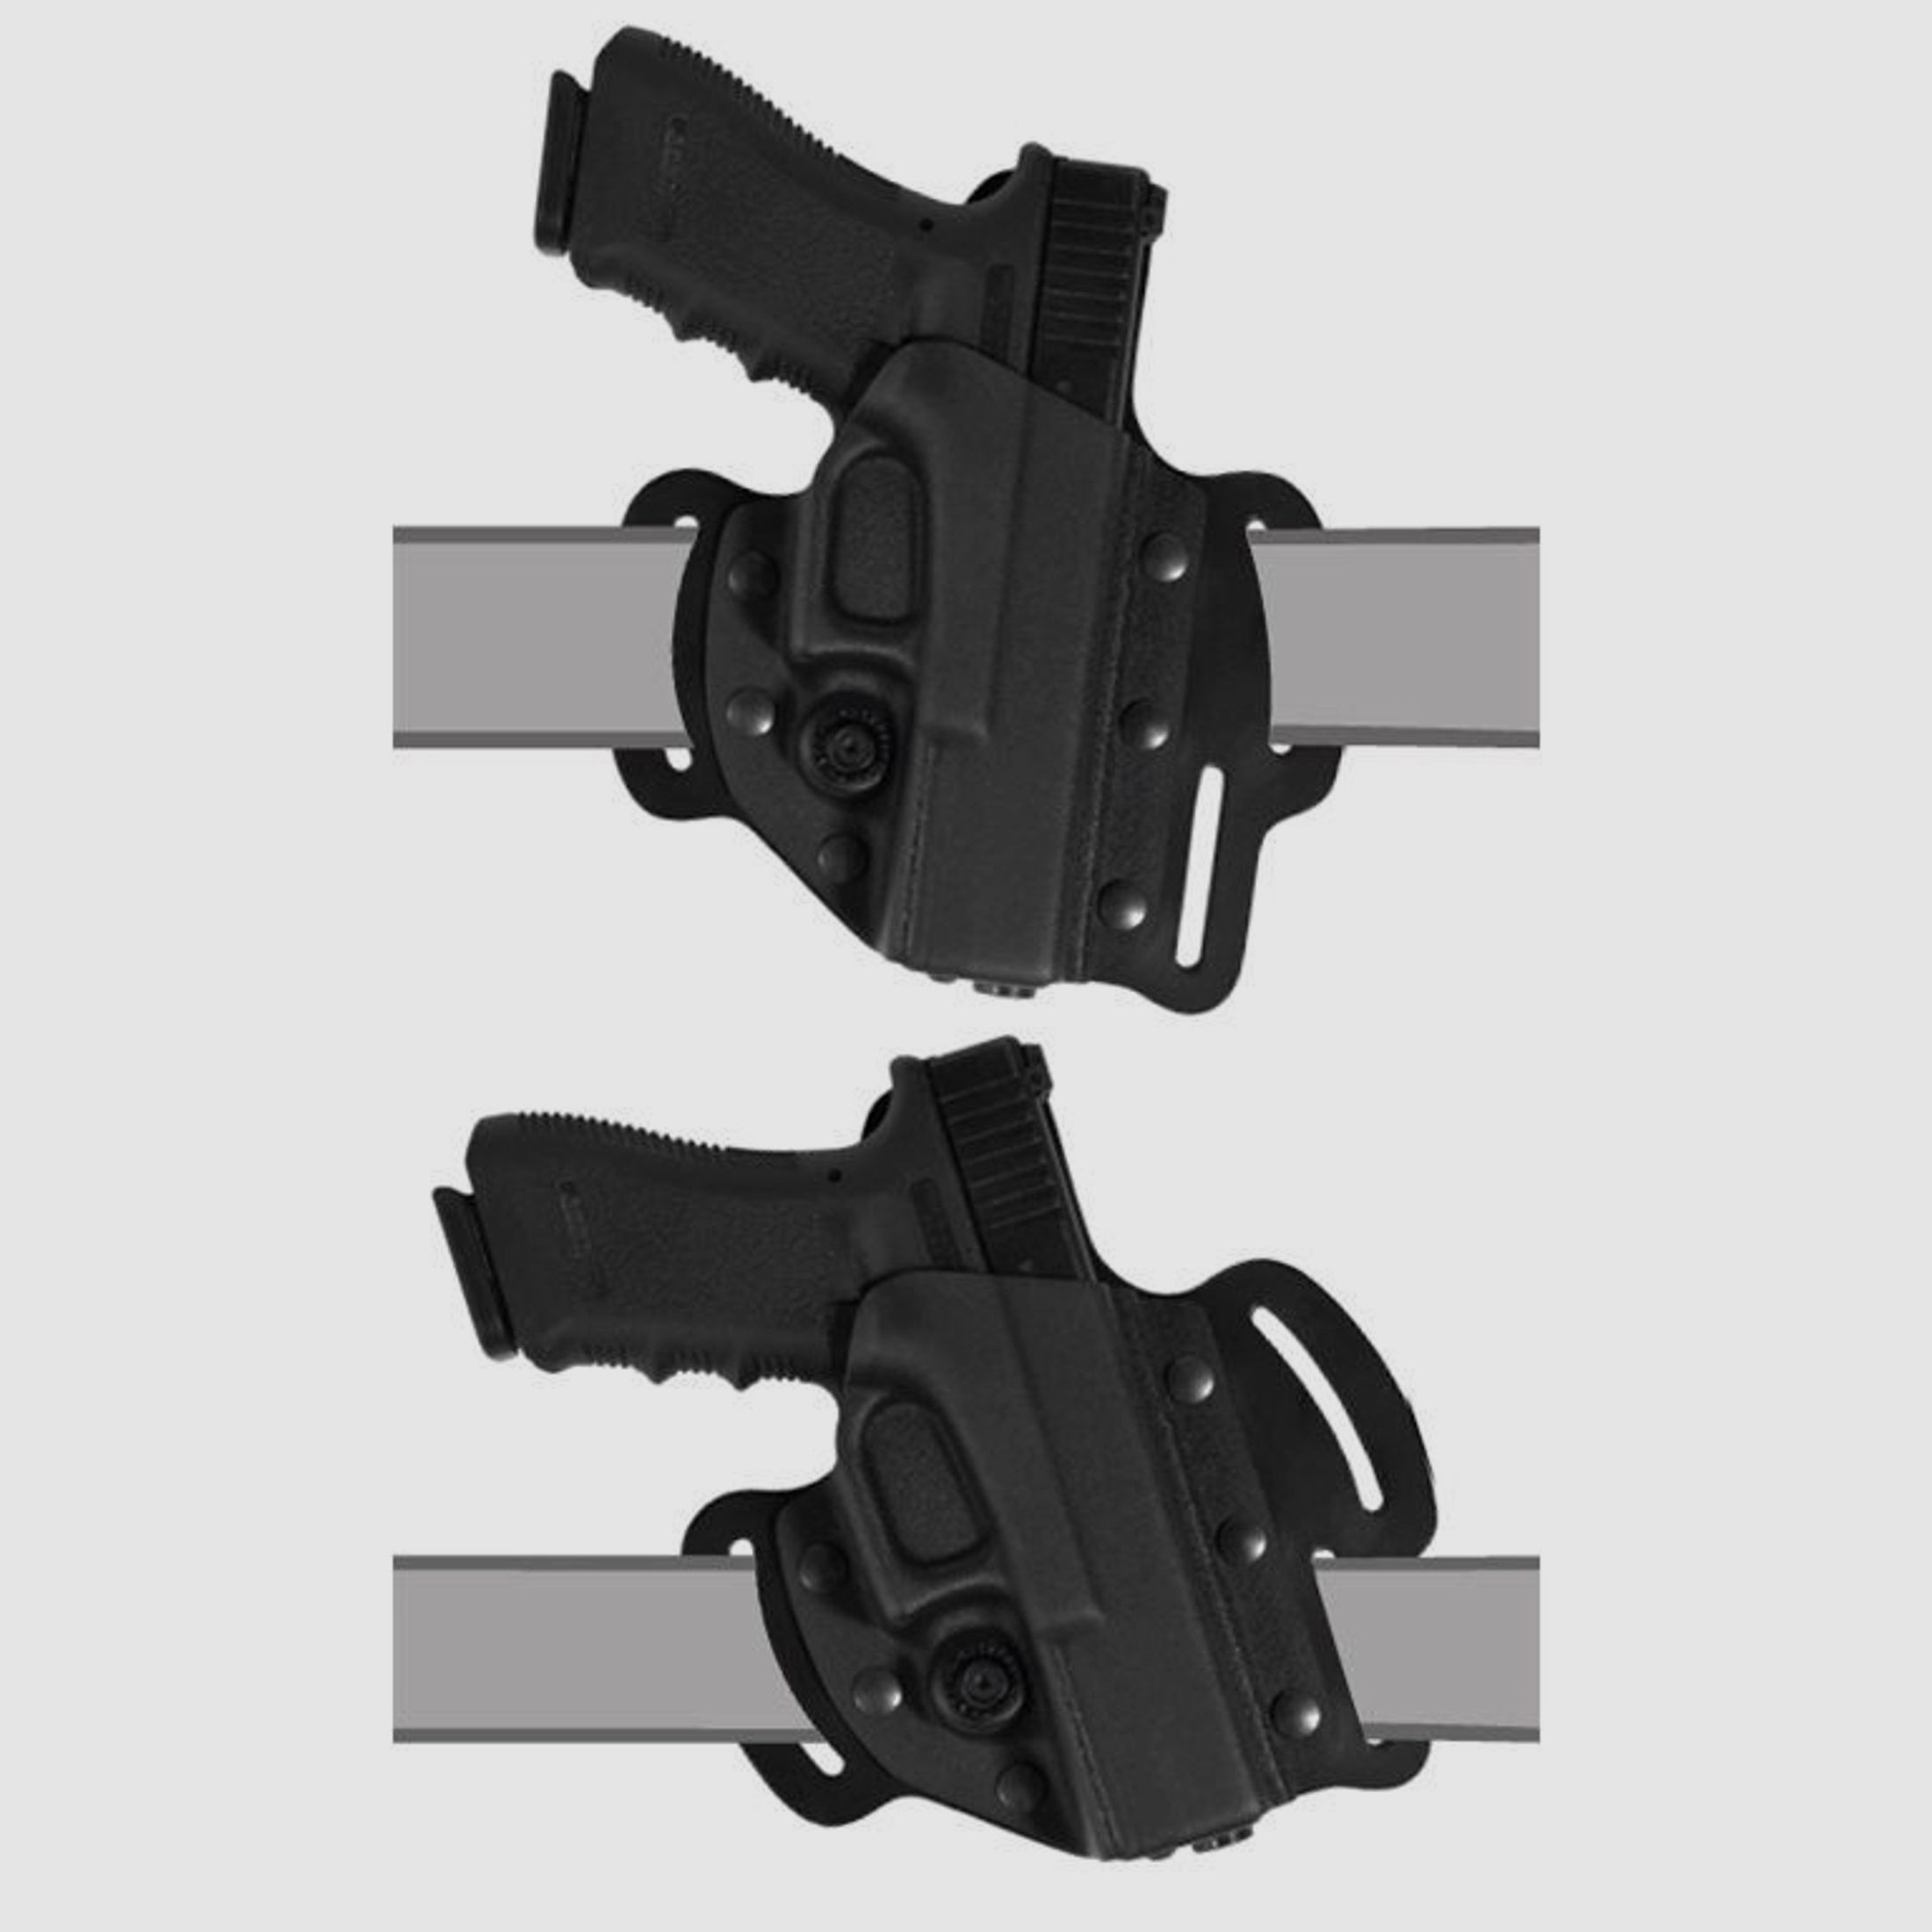 Flaches "Pancake" Holster Beretta APX / Centurion / Compact Linkshänder